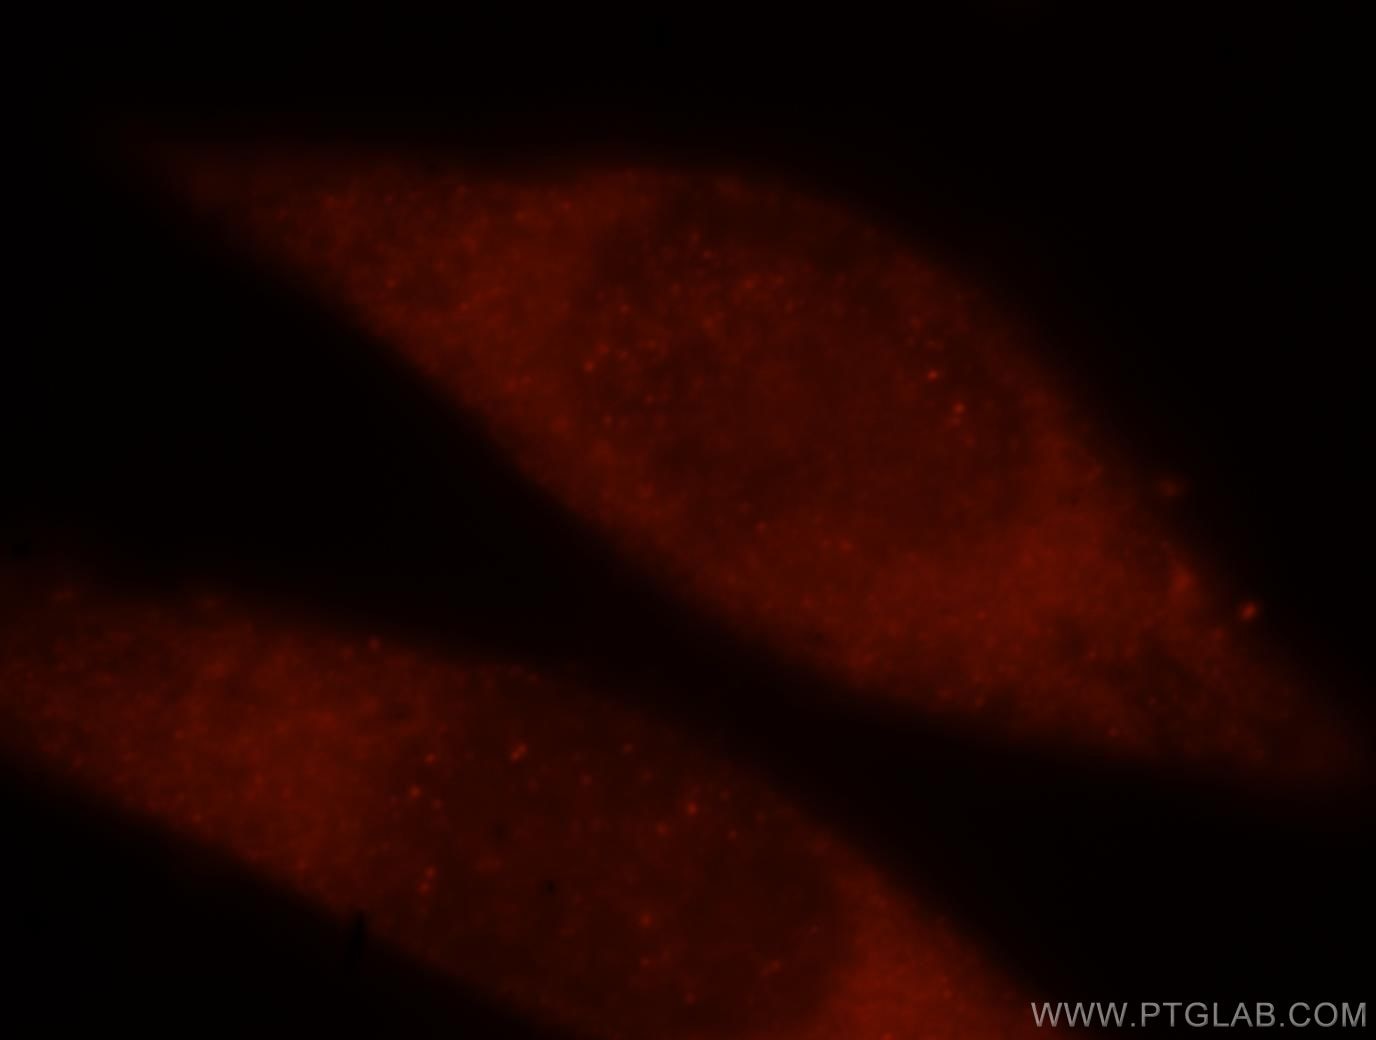 TRBP Antibody IF HeLa cells 15753-1-AP